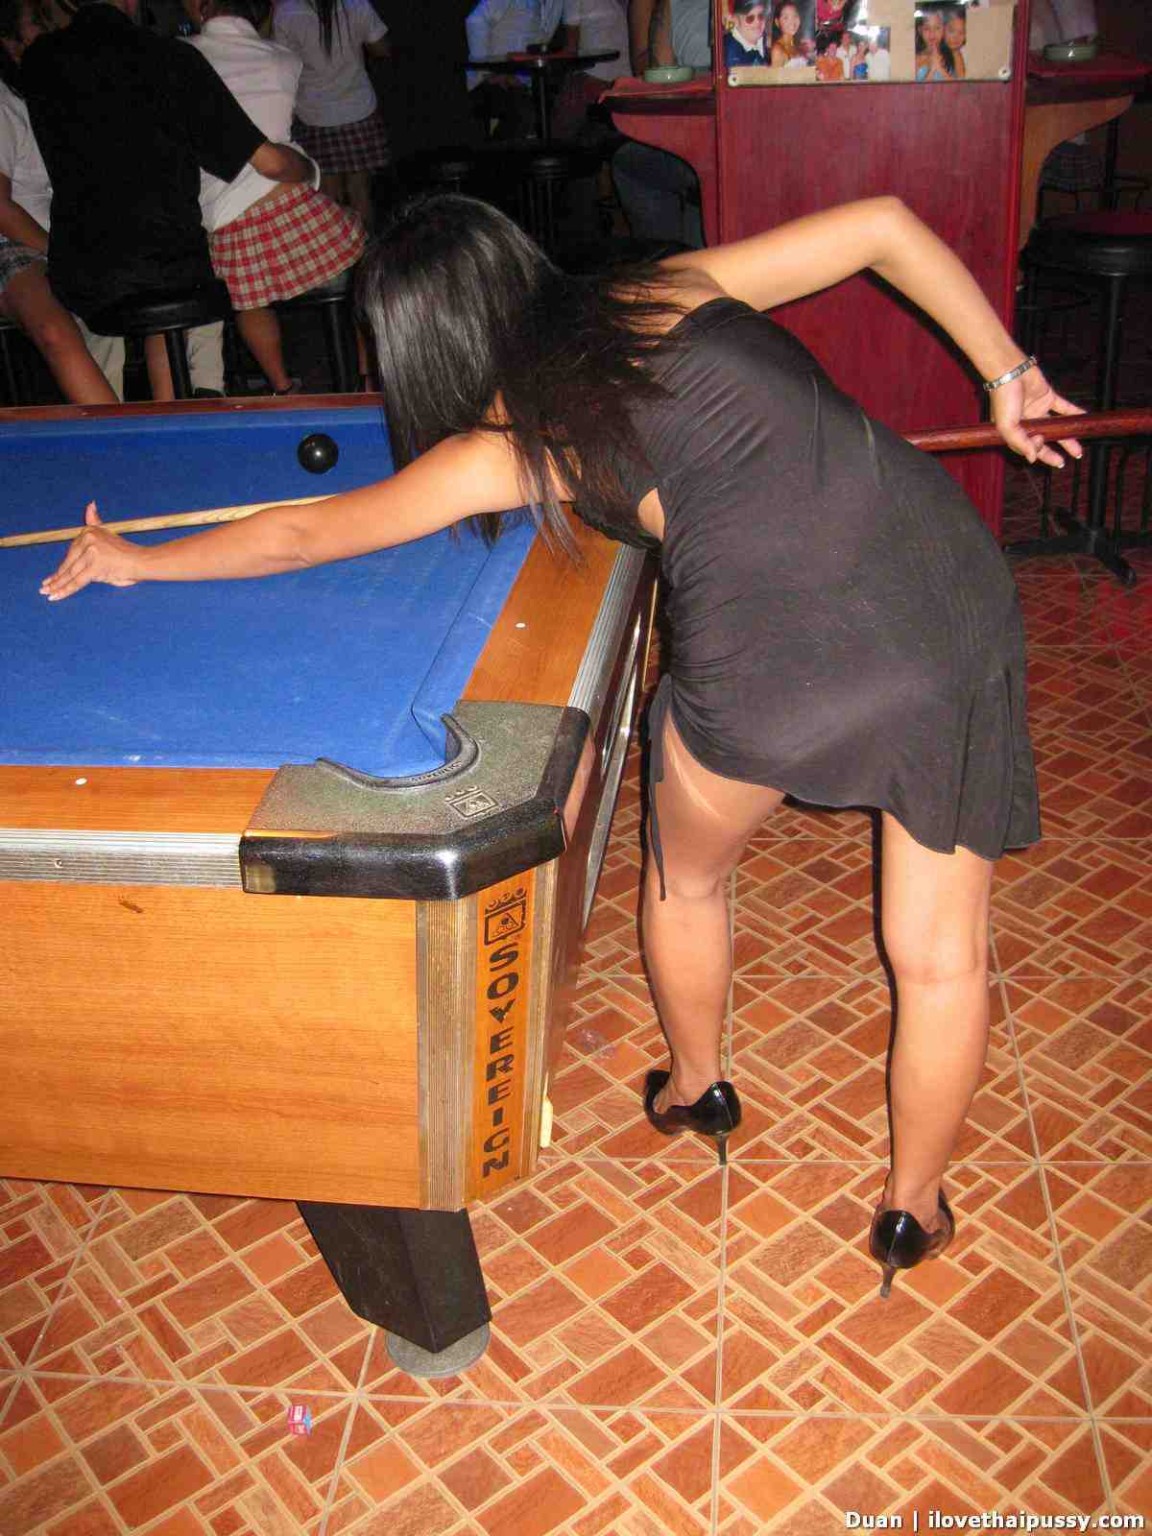 Thailandia bargirl gioca a biliardo e succhia il cazzo dei turisti per soldi
 #69883351